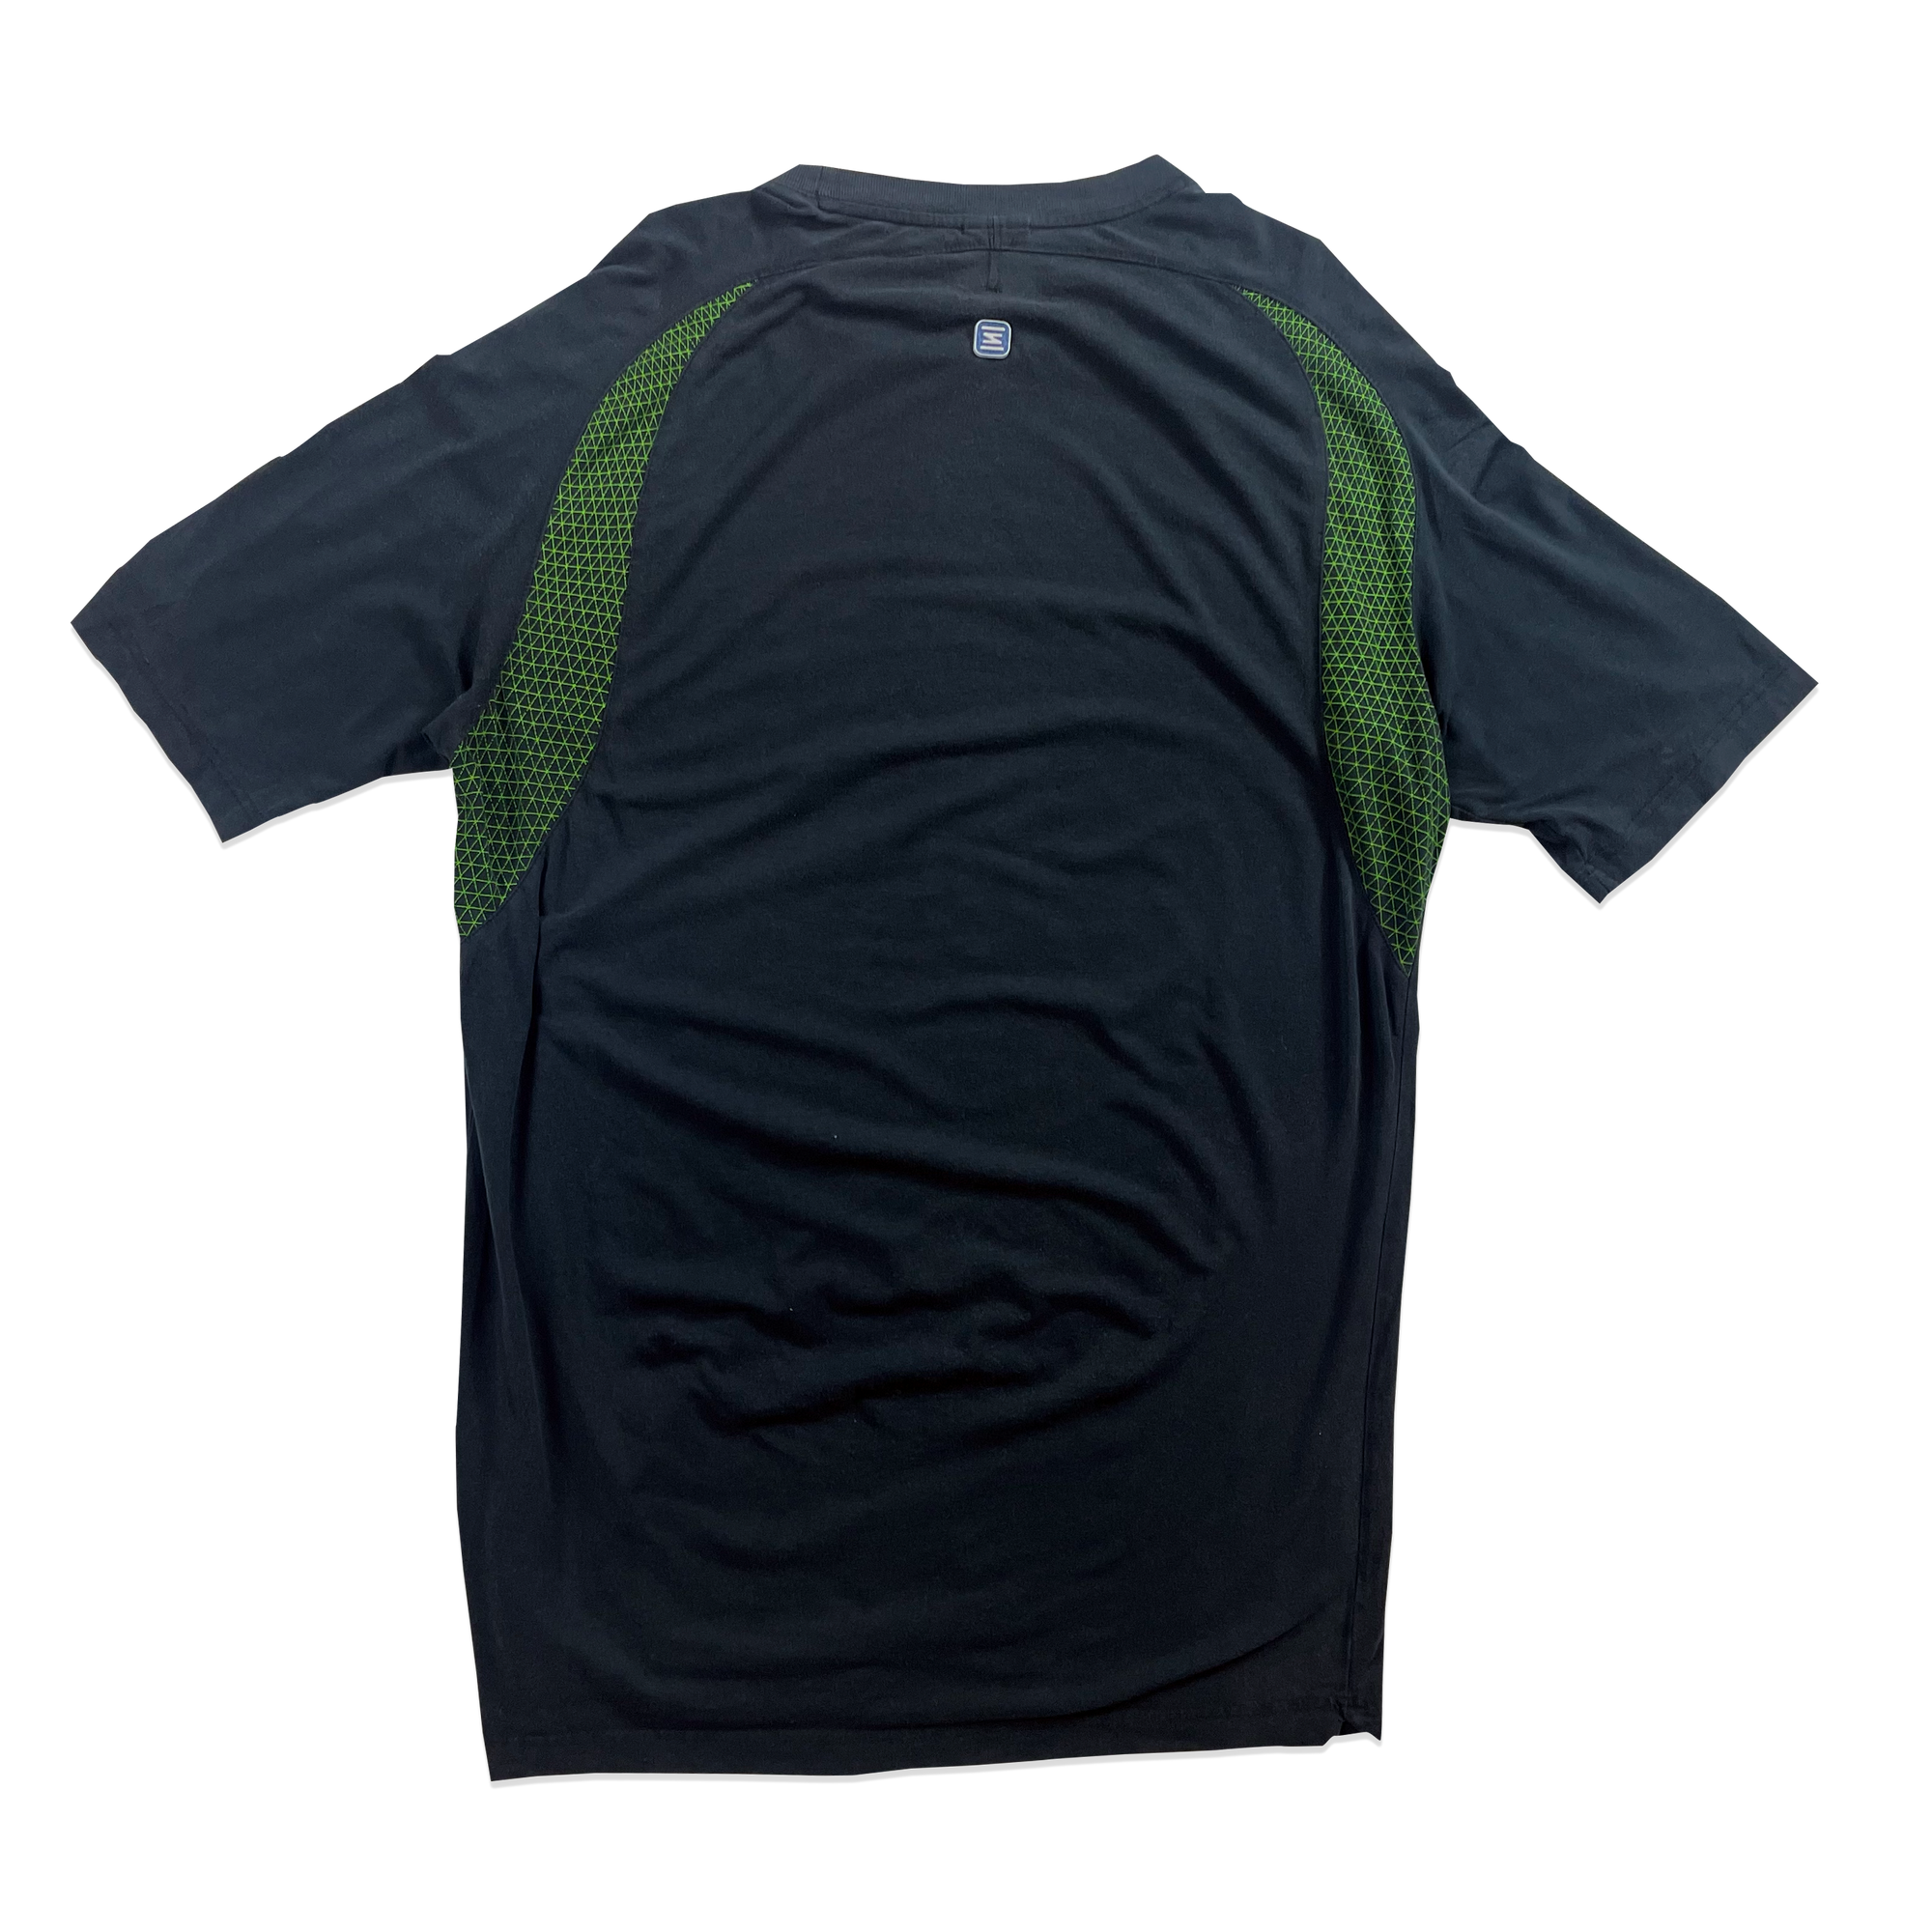 T-shirt - Nike Shox - Noir